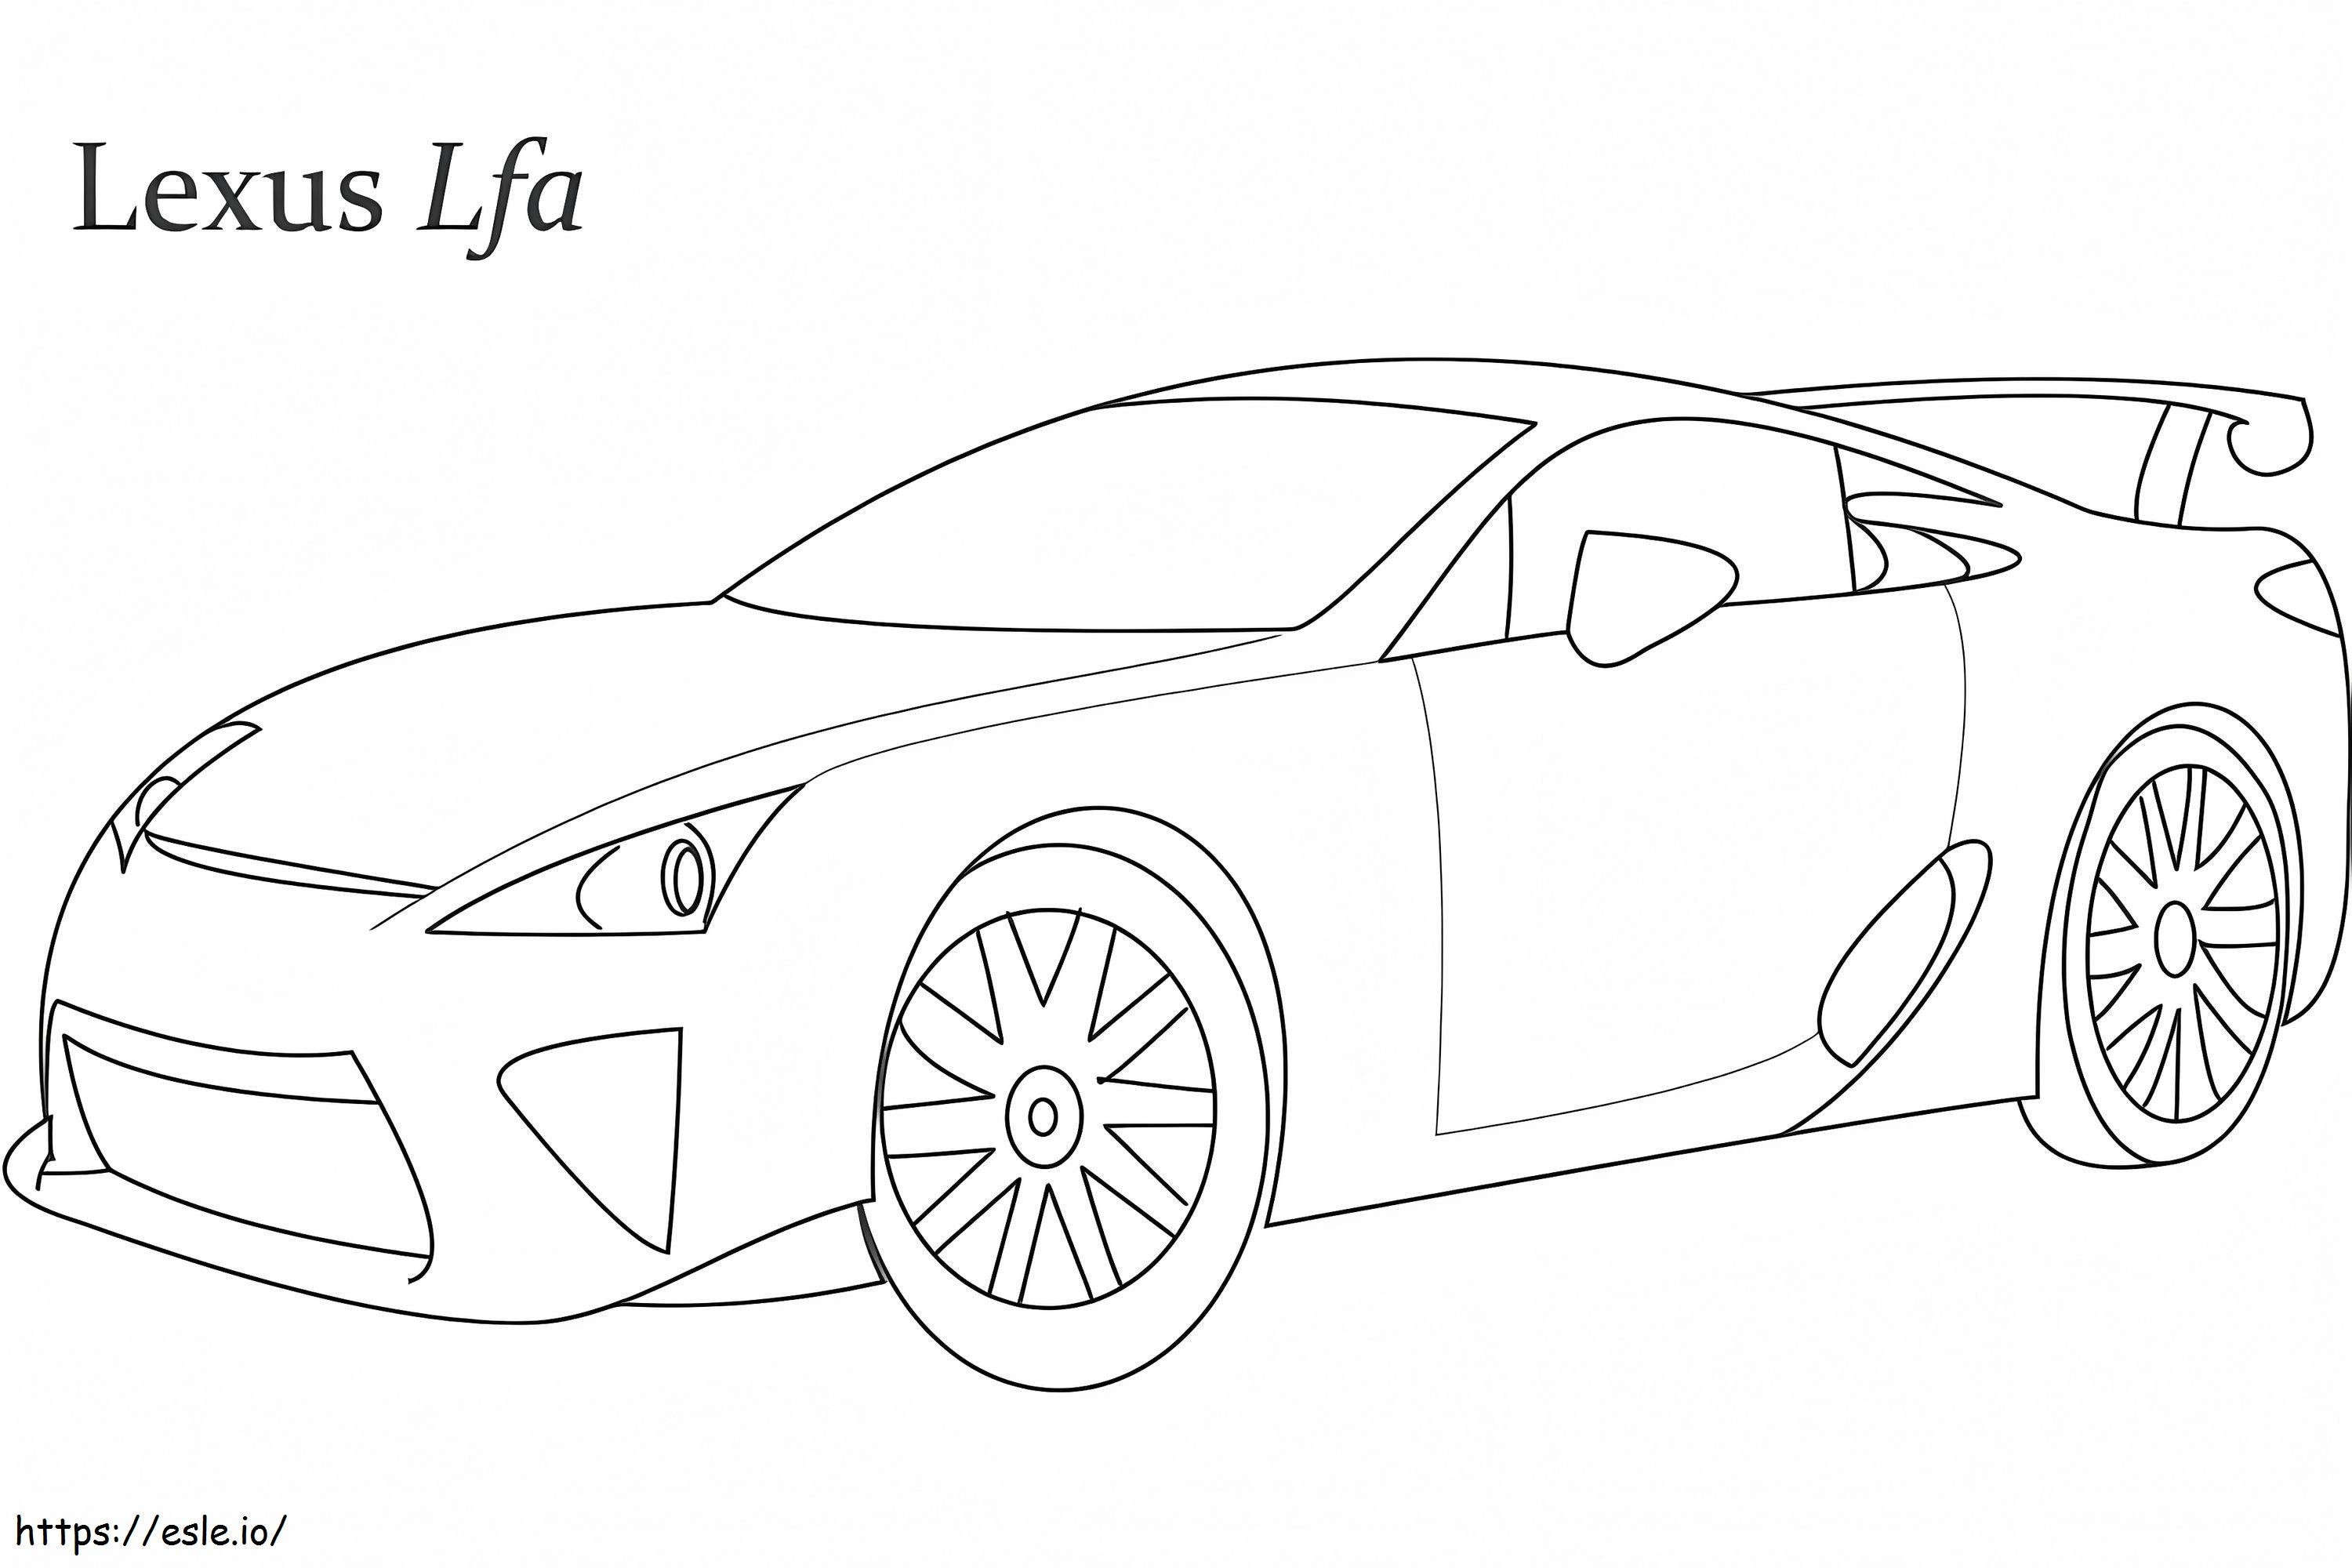 Lexus Lfa-raceauto kleurplaat kleurplaat